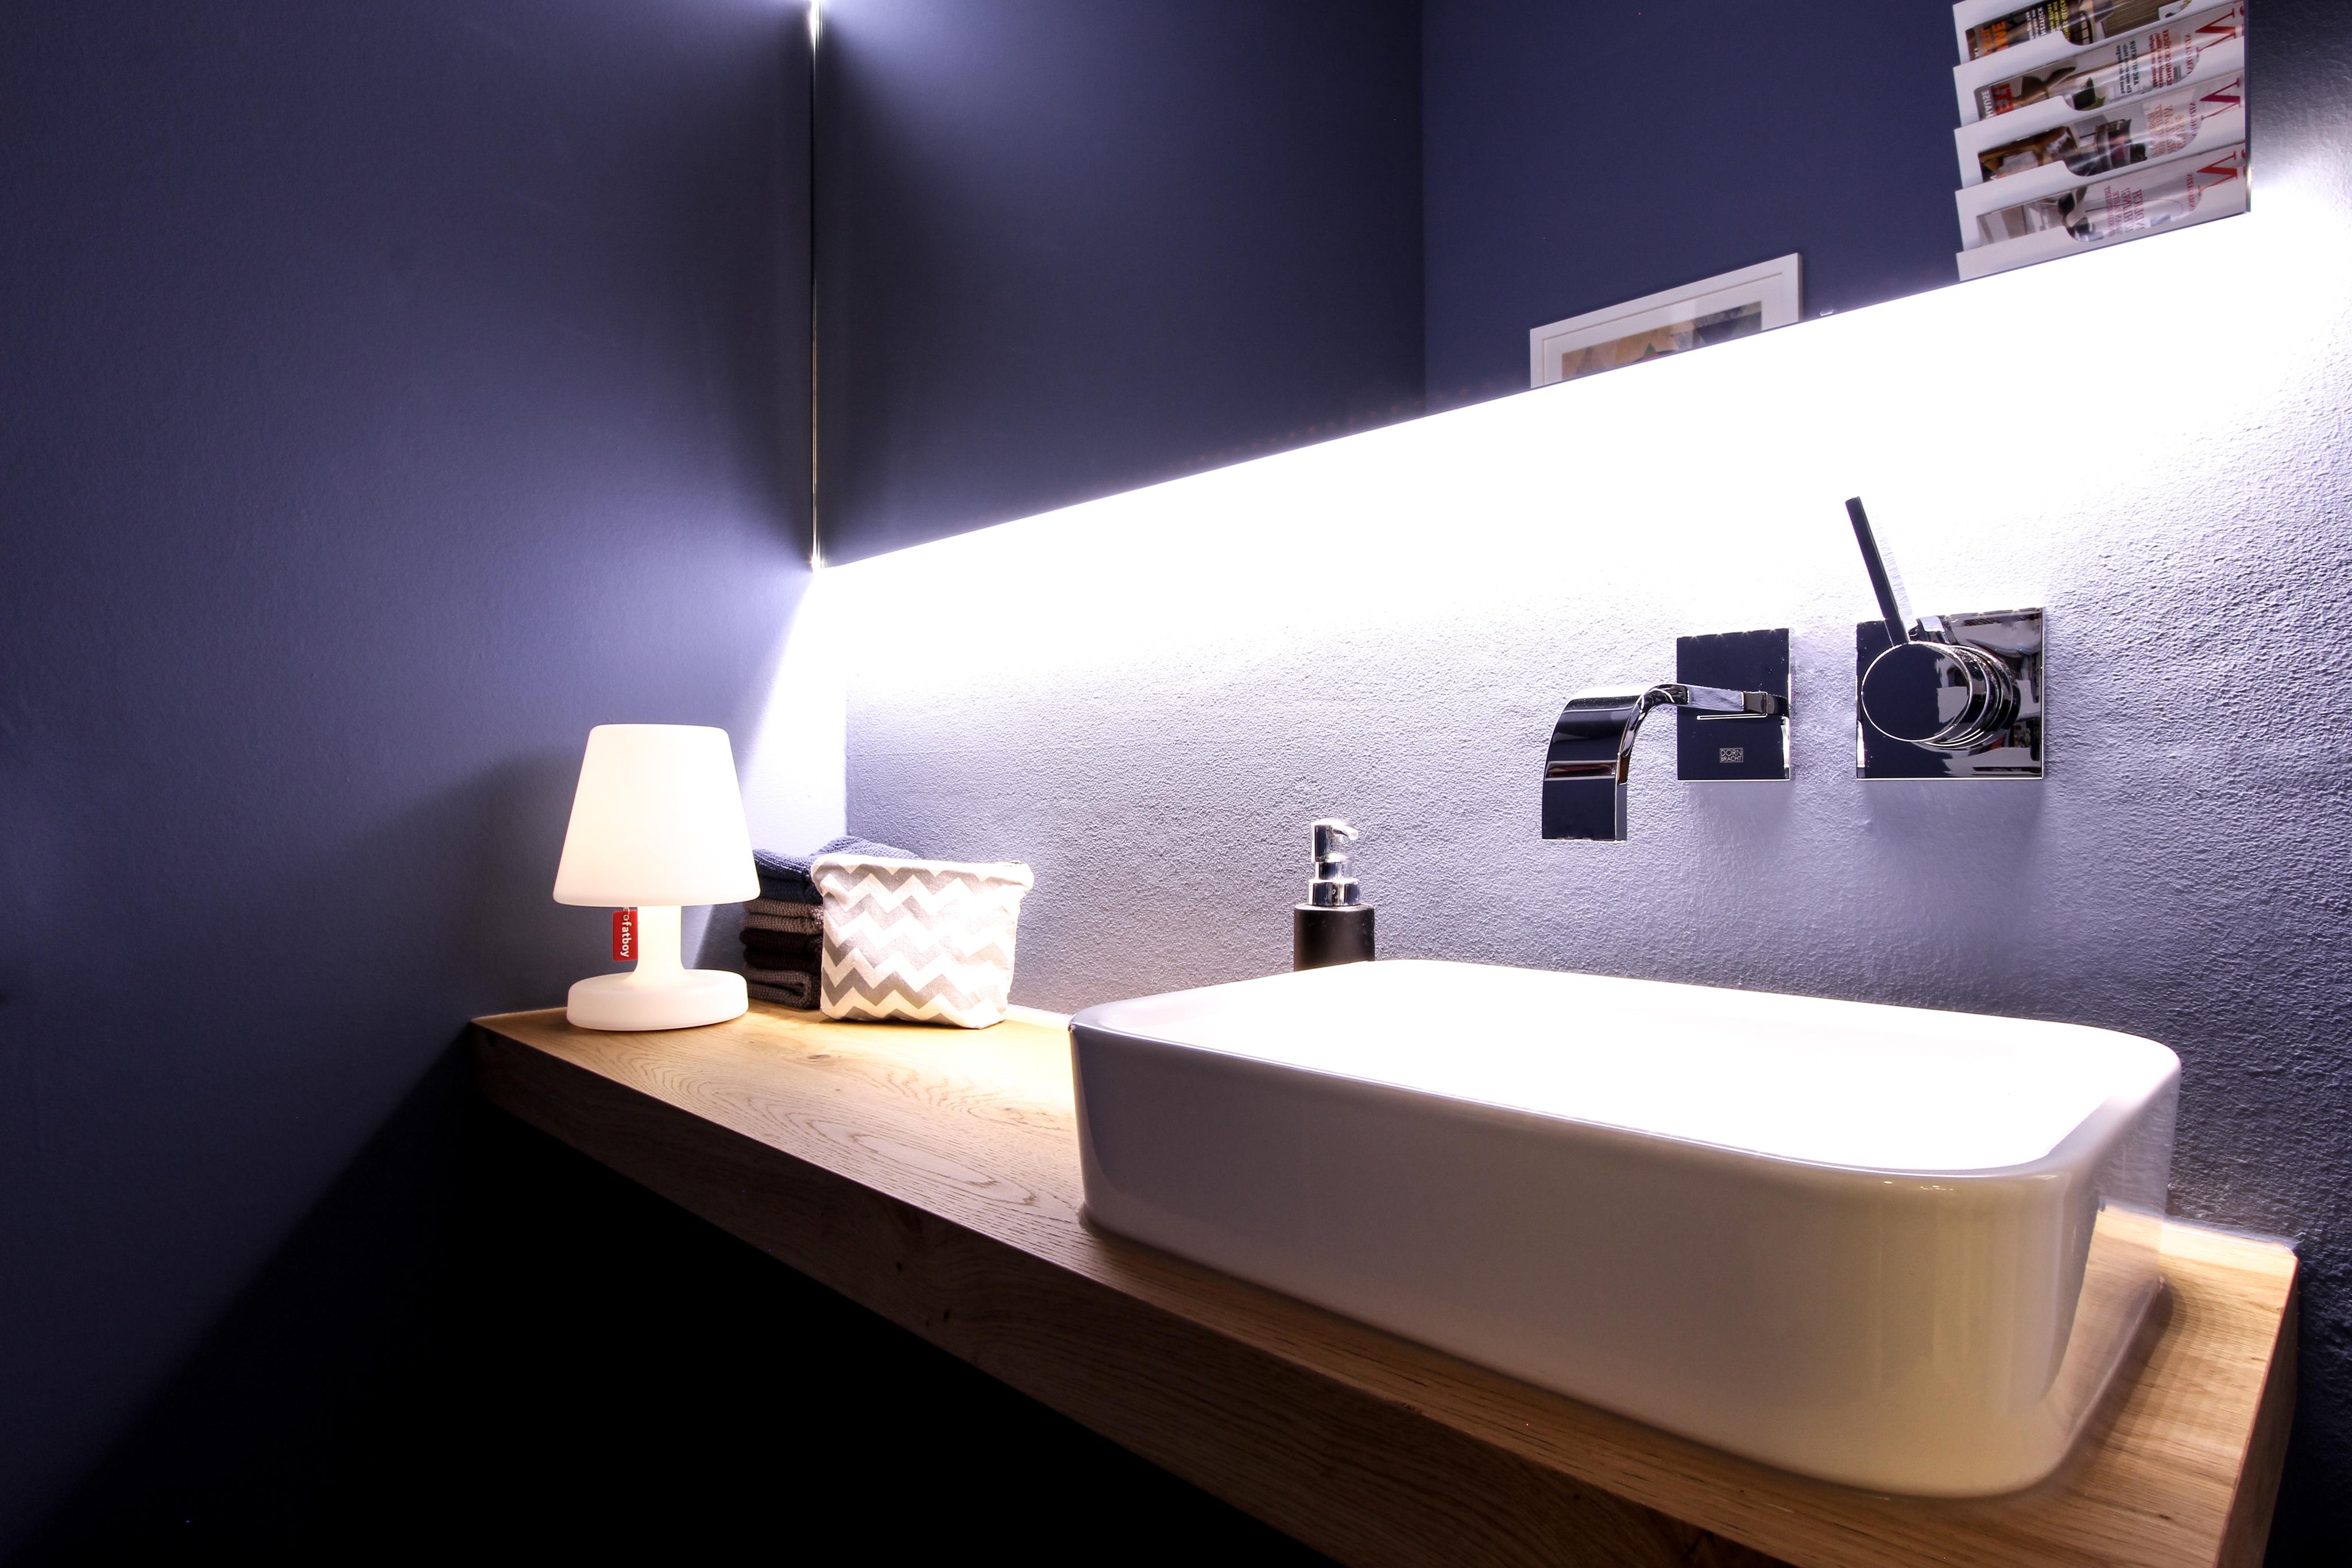 Blaue Gästetoilette #indirektebeleuchtung ©EXTRAVIEL office & home design